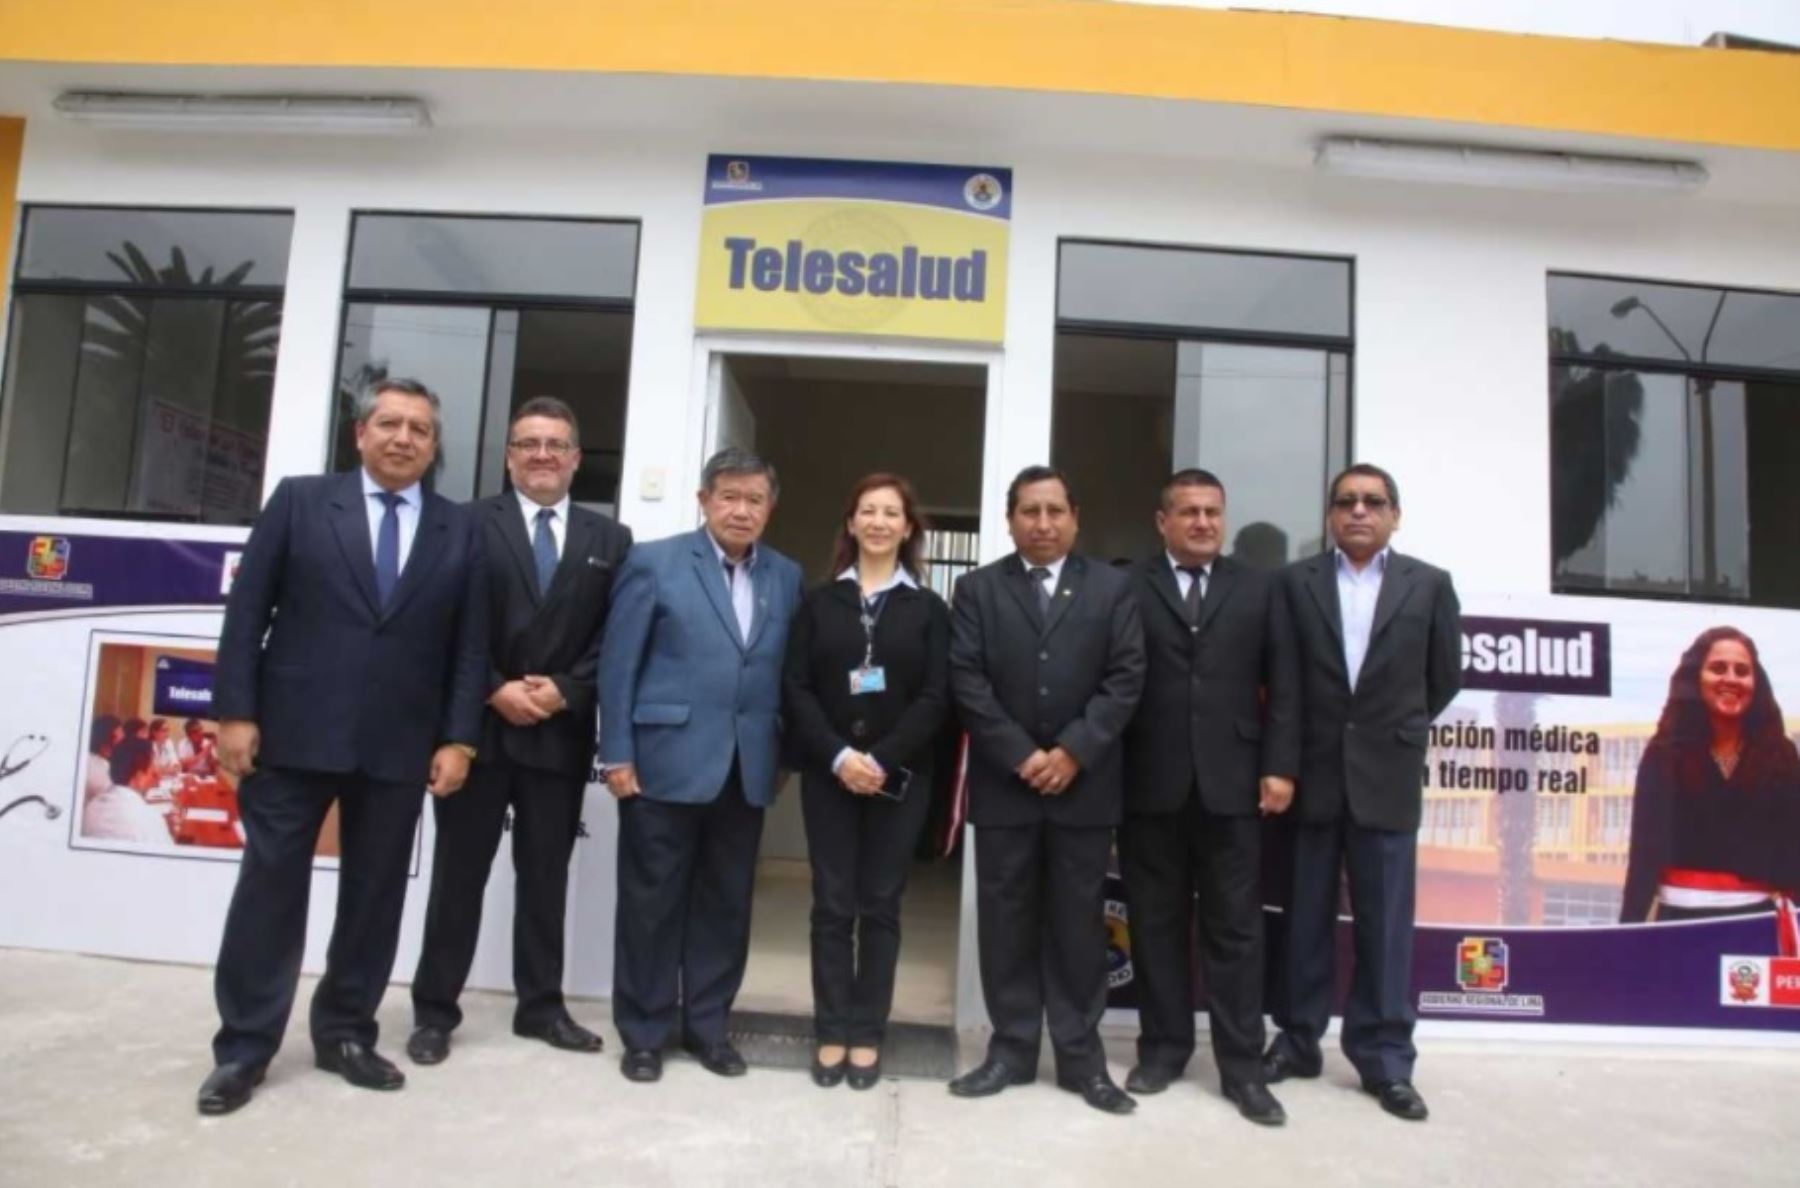 Ministerio de Salud inaugura Programa Telesalud en hospitales de Huaral y Huacho